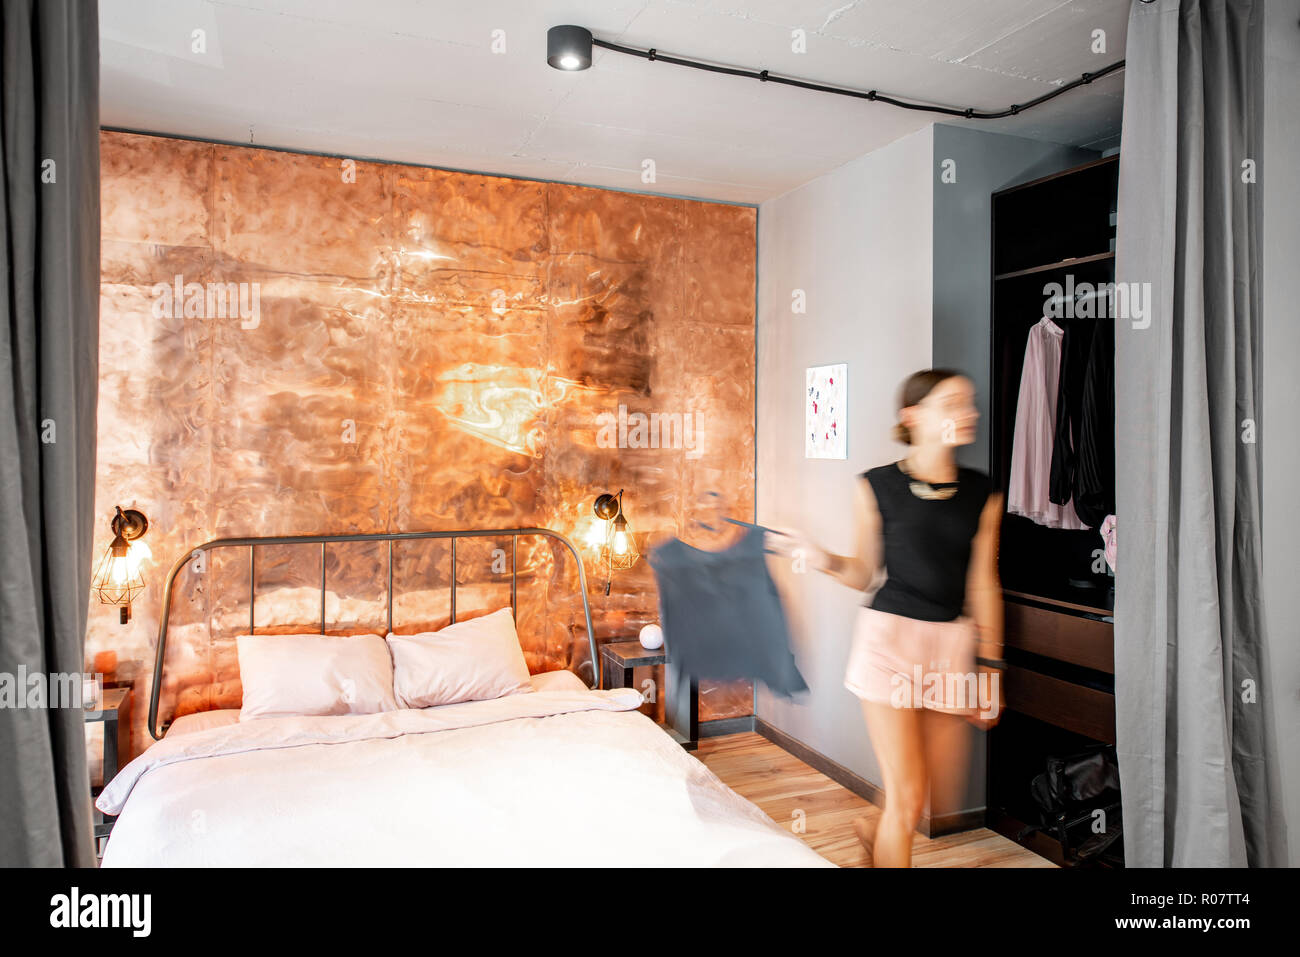 Moderne Schlafzimmer im Loft intreior mit hellem Kupfer Wand- und Bewegung  verwischt Frau gehen mit clothhes Stockfotografie - Alamy